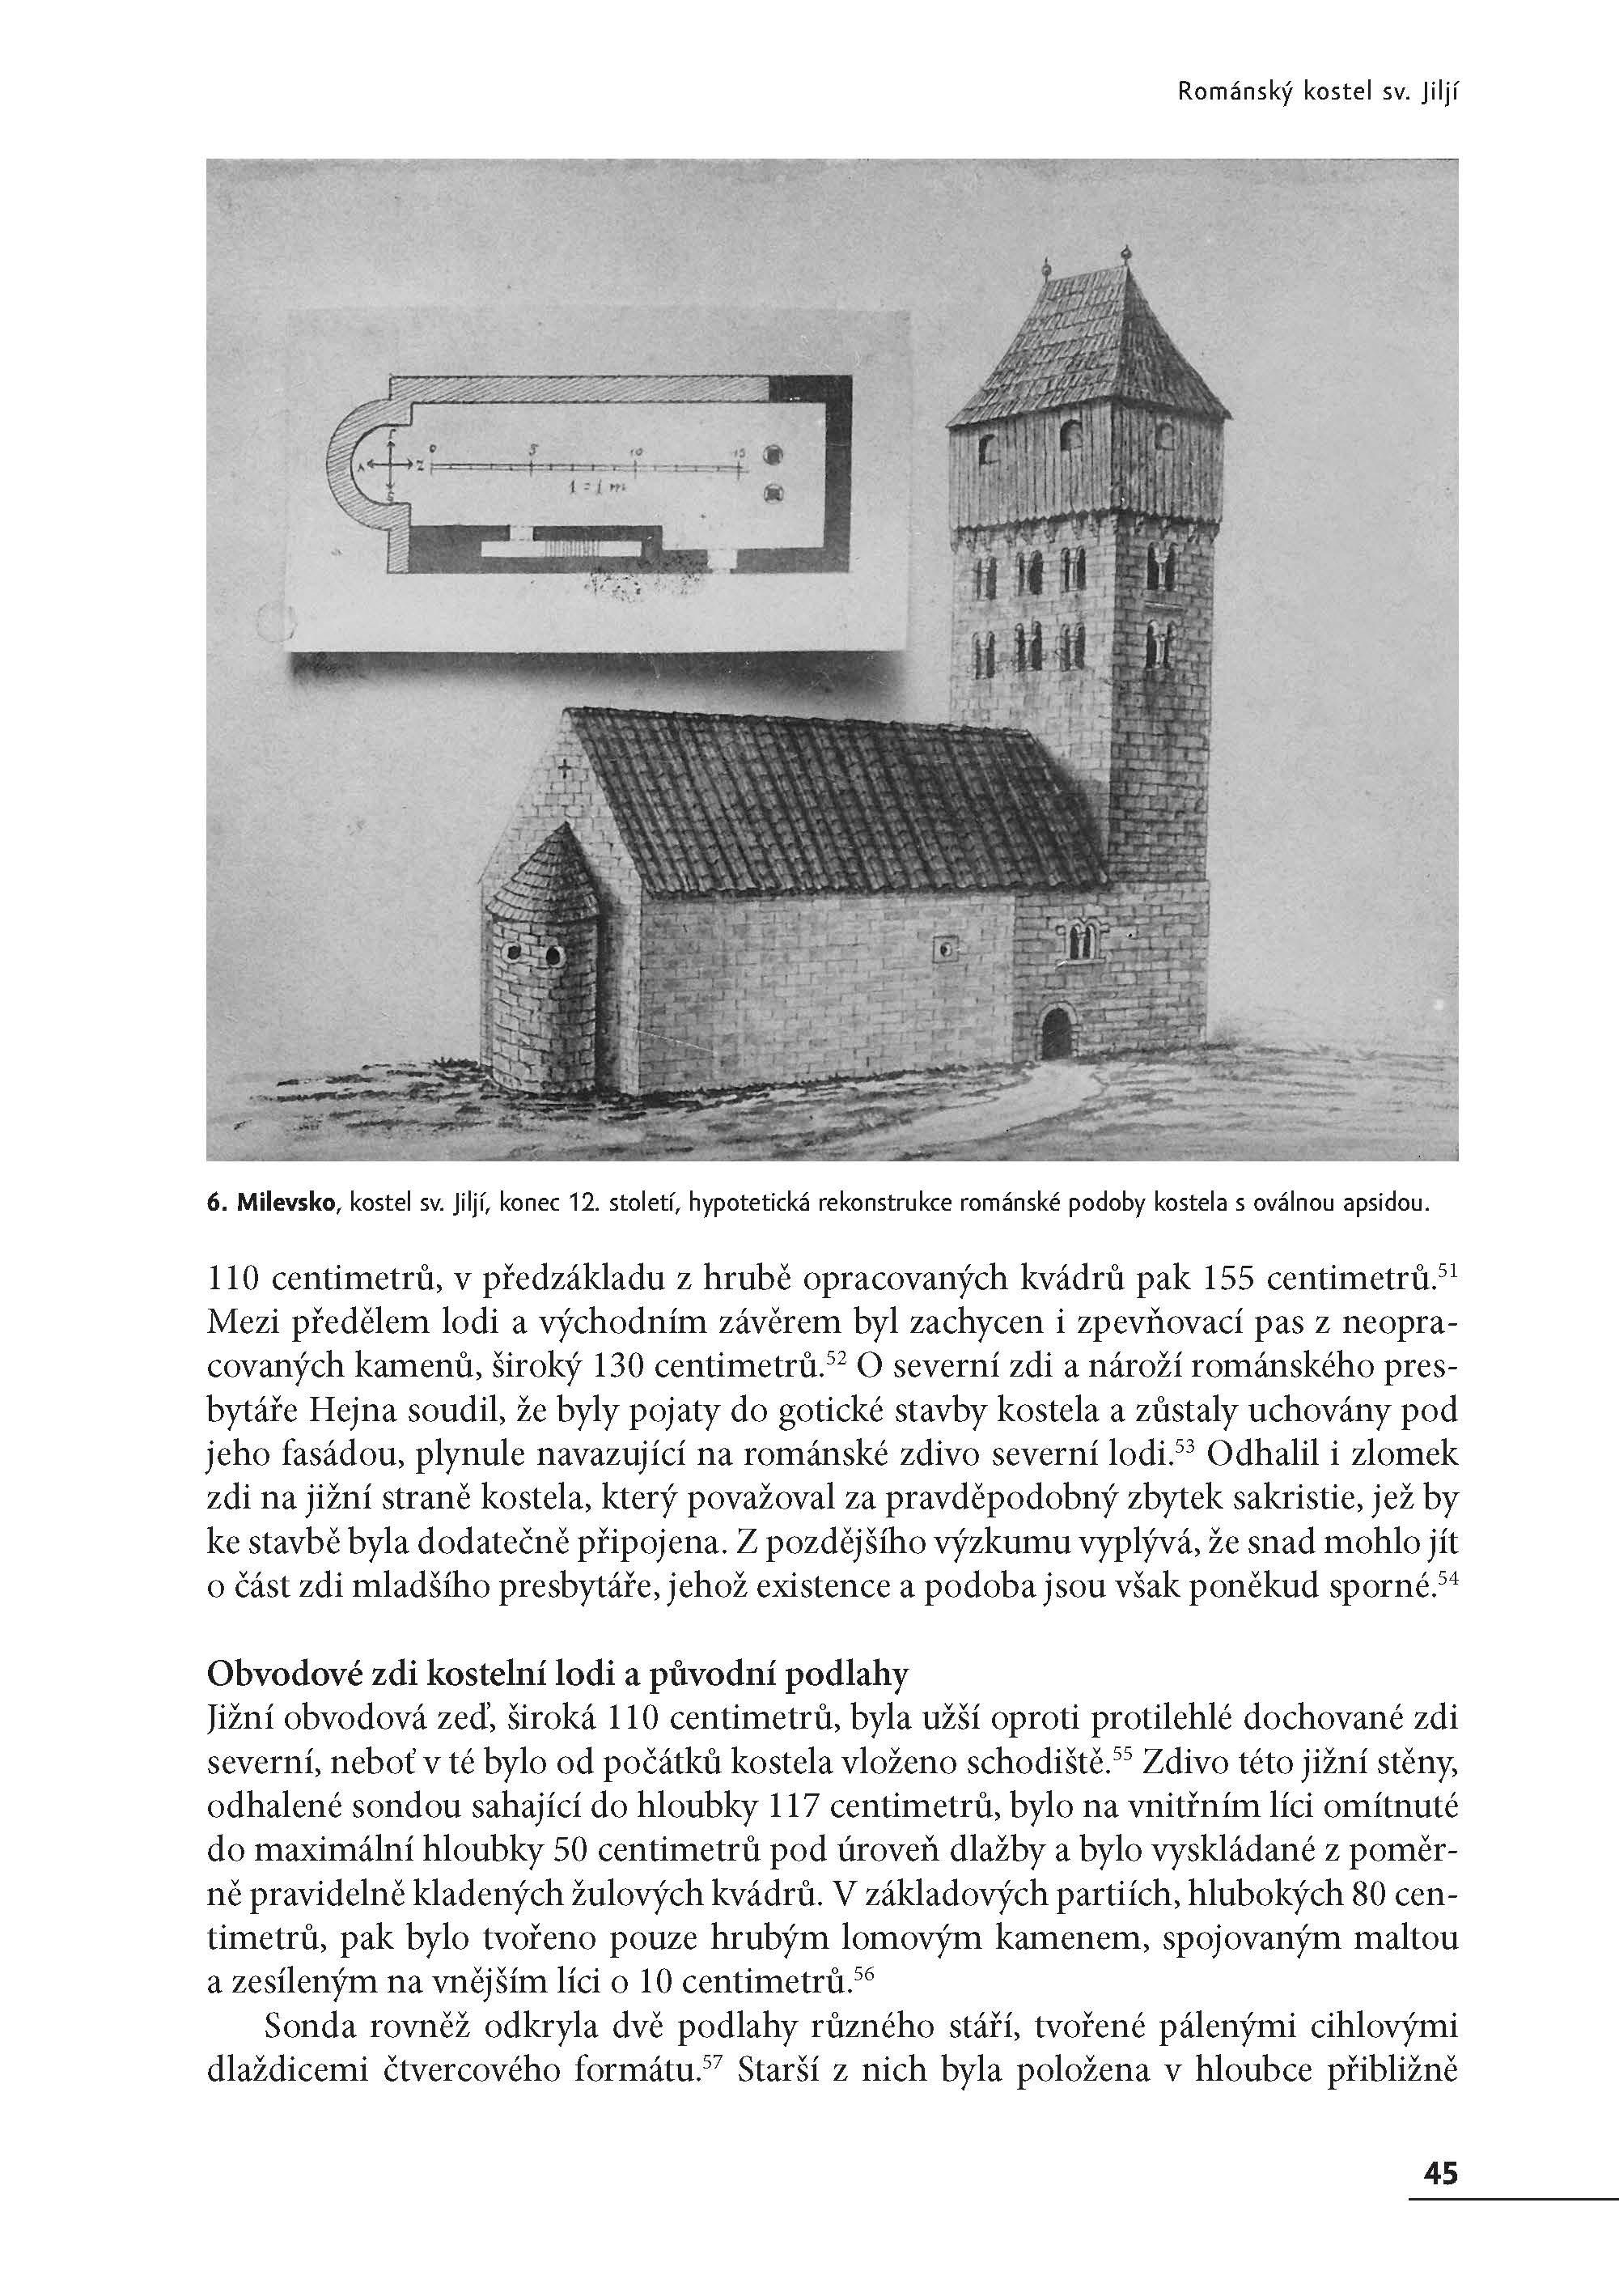 Premonstrátský klášter a kostel sv. Jiljí v Milevsku ukázka-8